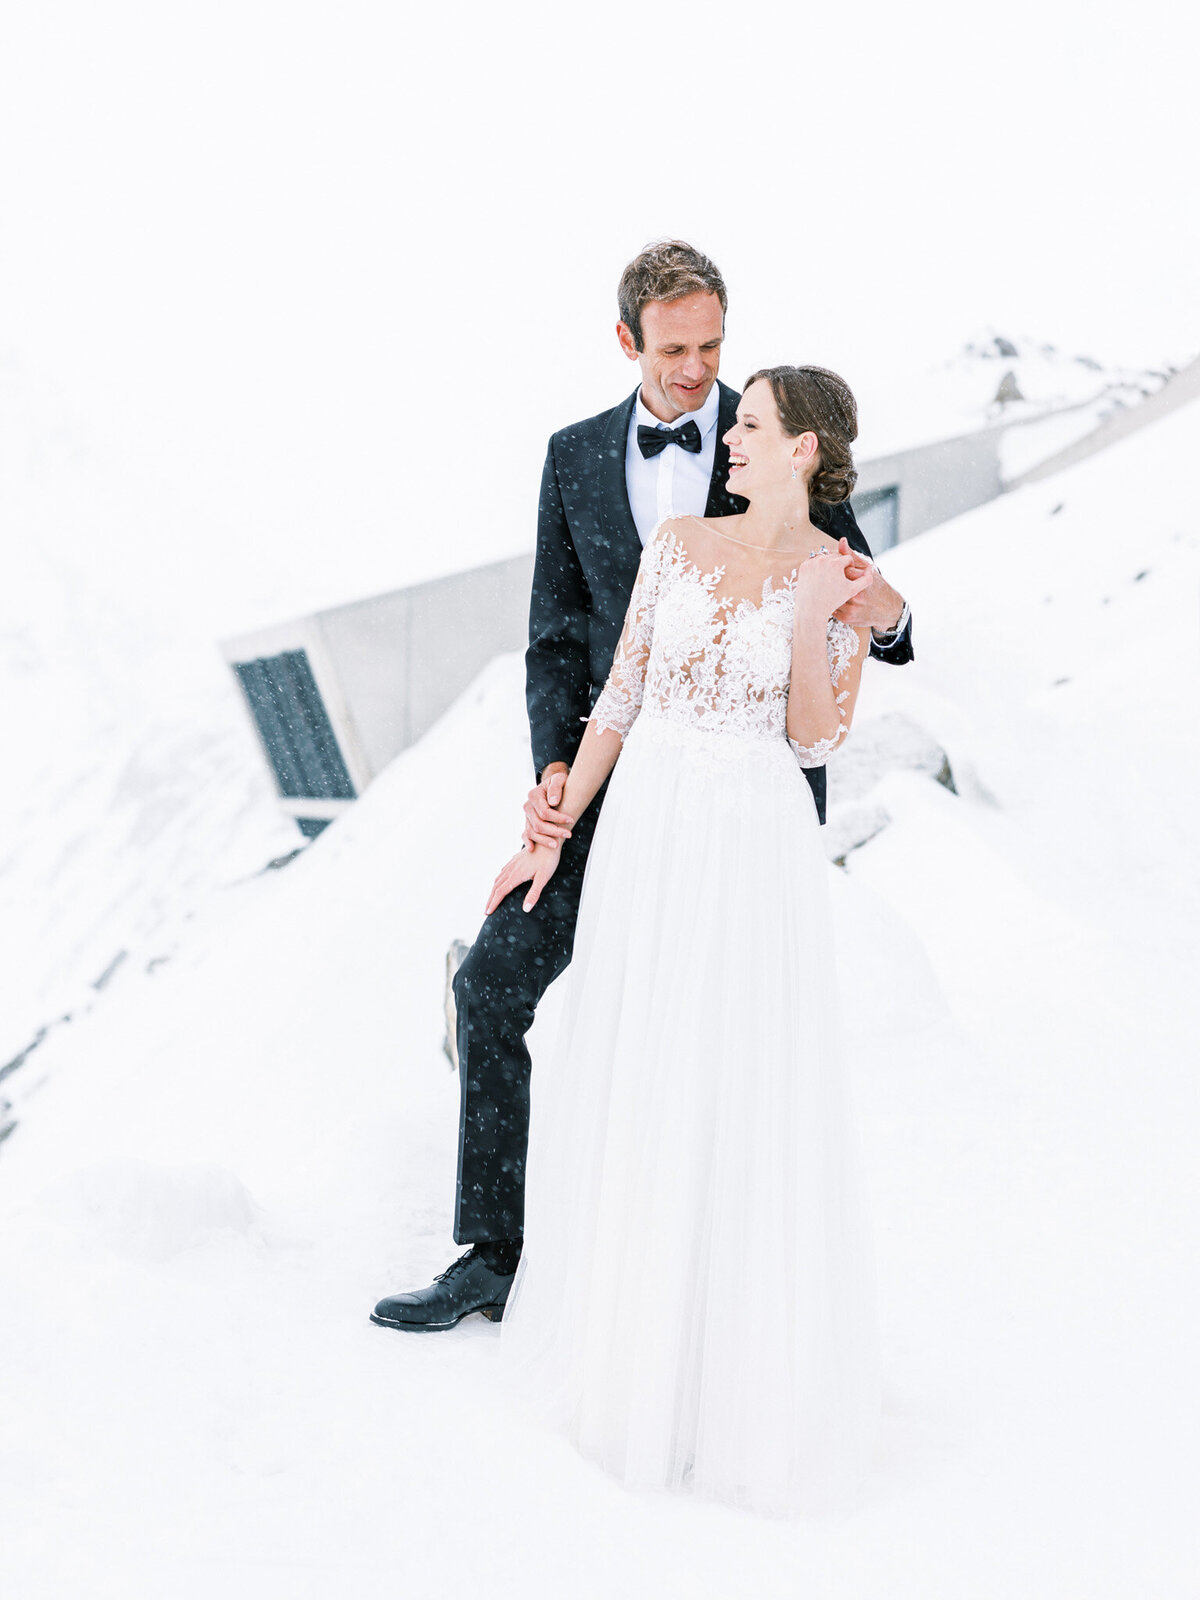 27-Elegant-Winter-Wedding-by-Tony-Gigov-Photography